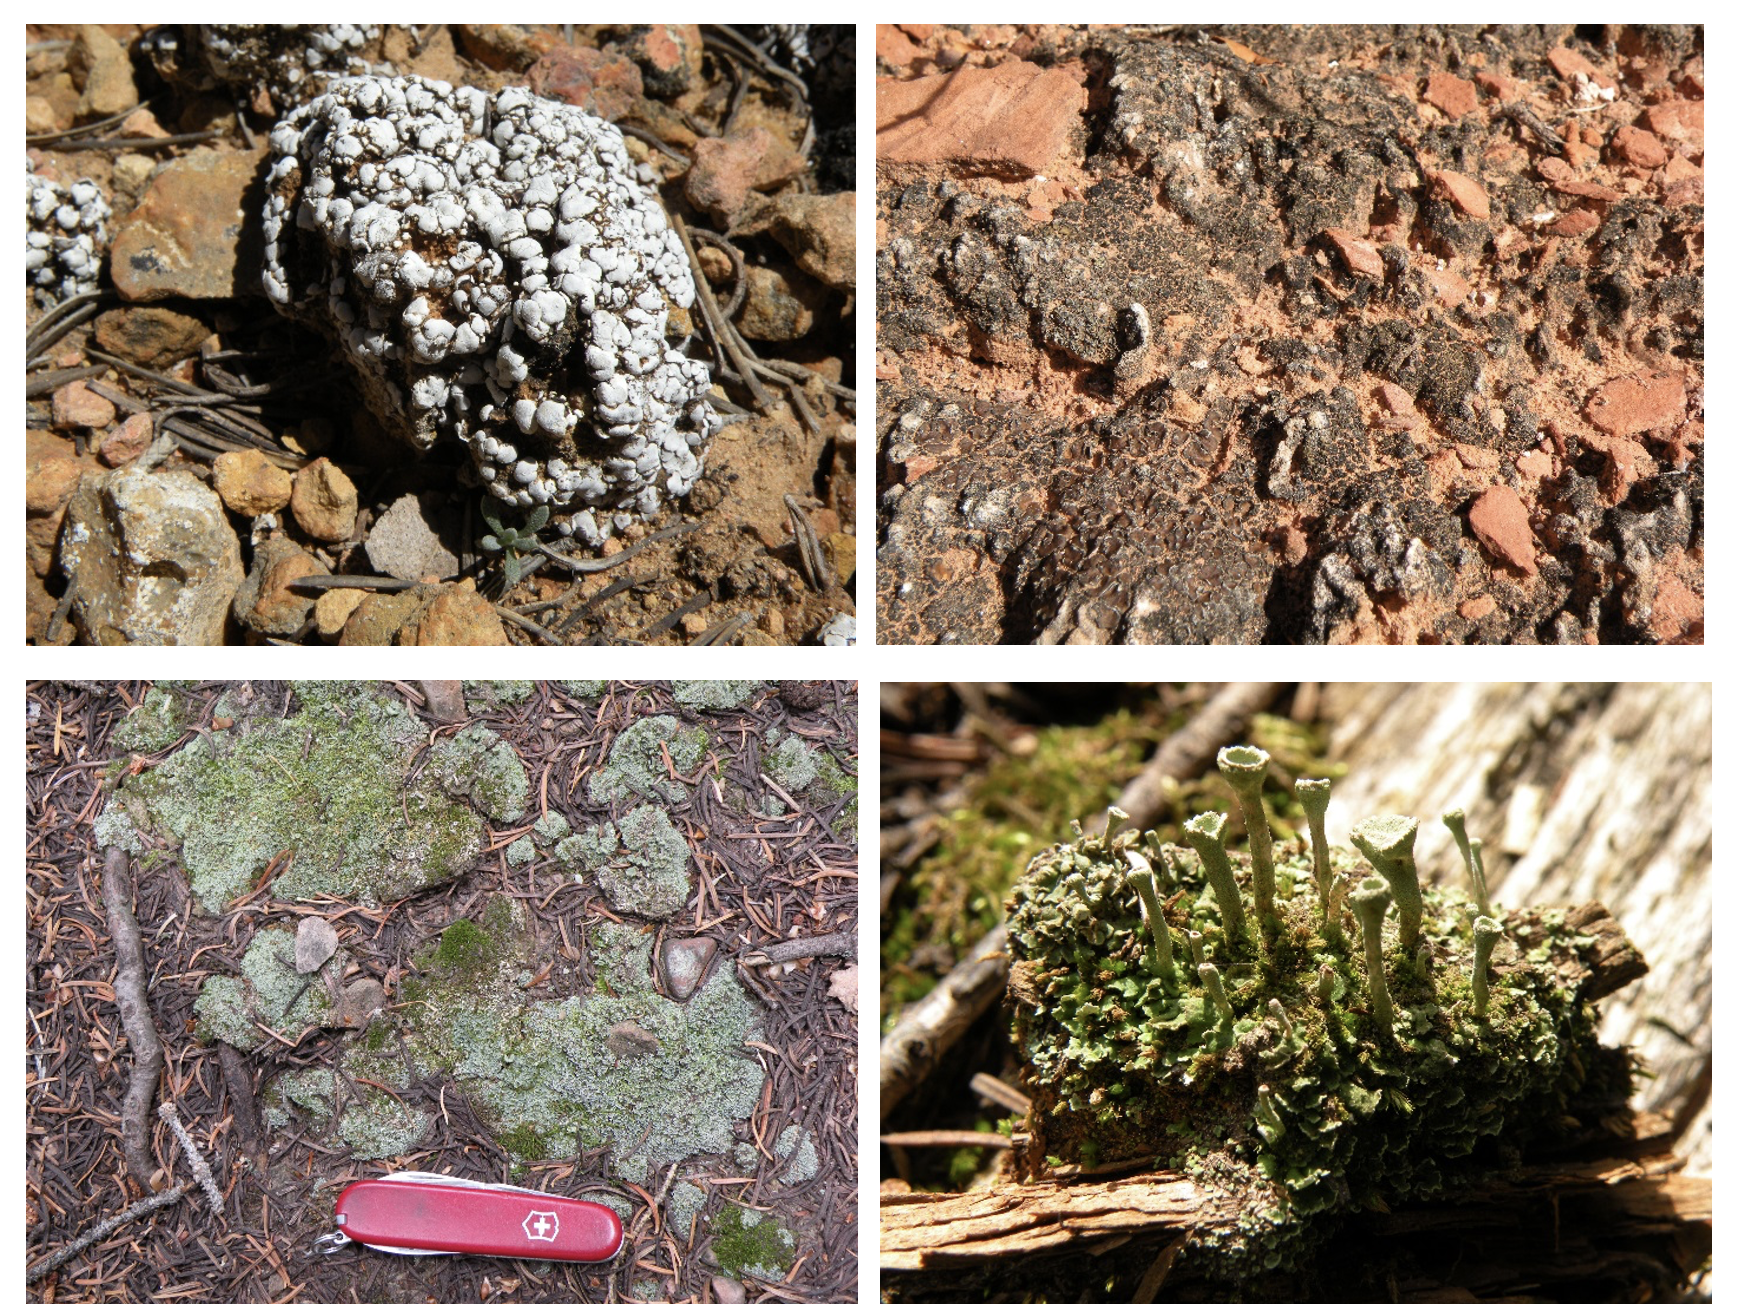 Four pictures of squamulose lichens.